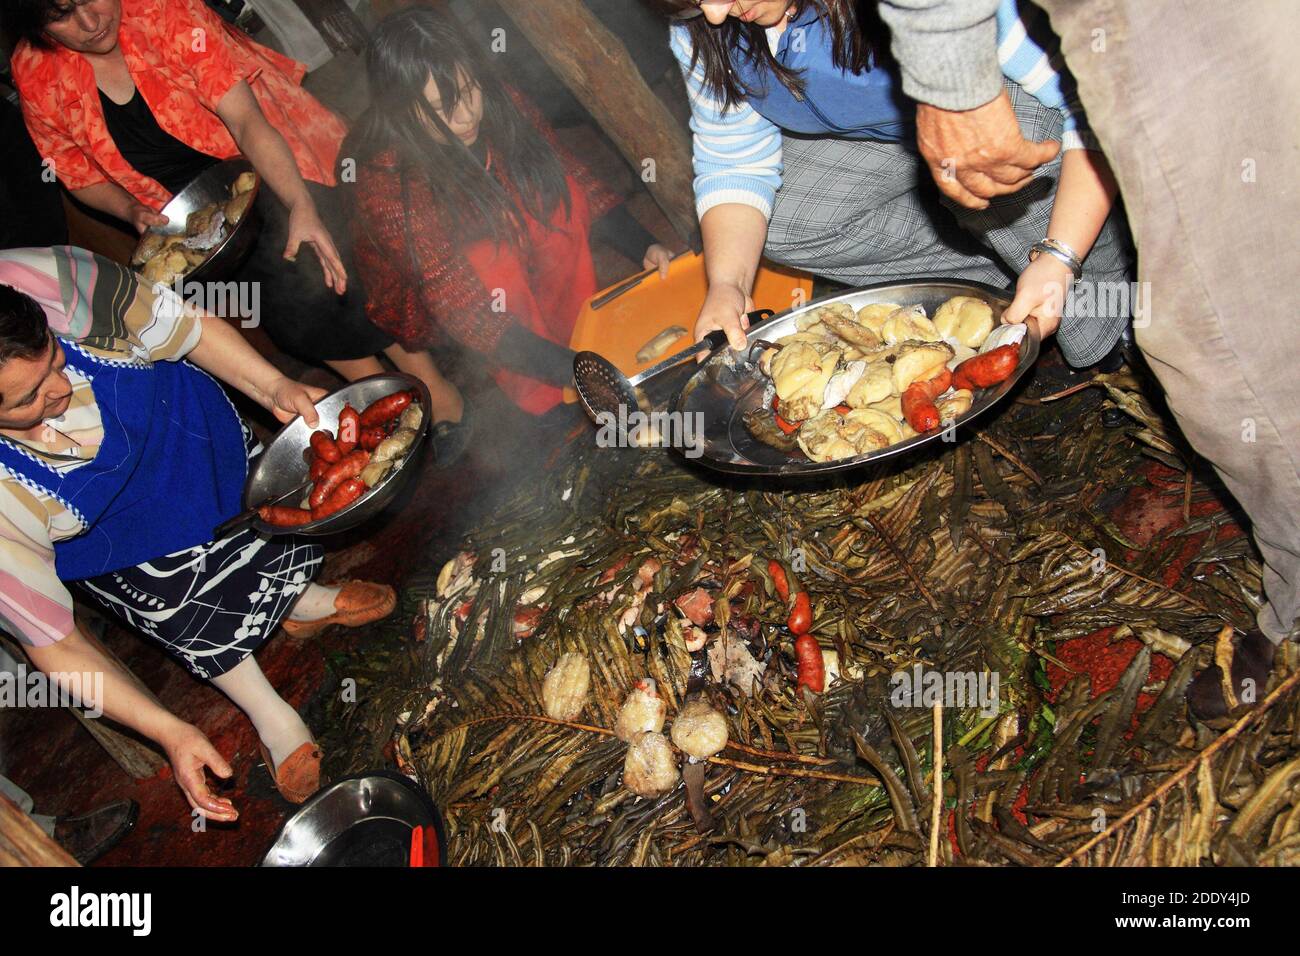 Préparer les ingrédients d'un curanto, un repas traditionnel cuit dans une fosse sur l'île de Chiloe, au Chili Banque D'Images